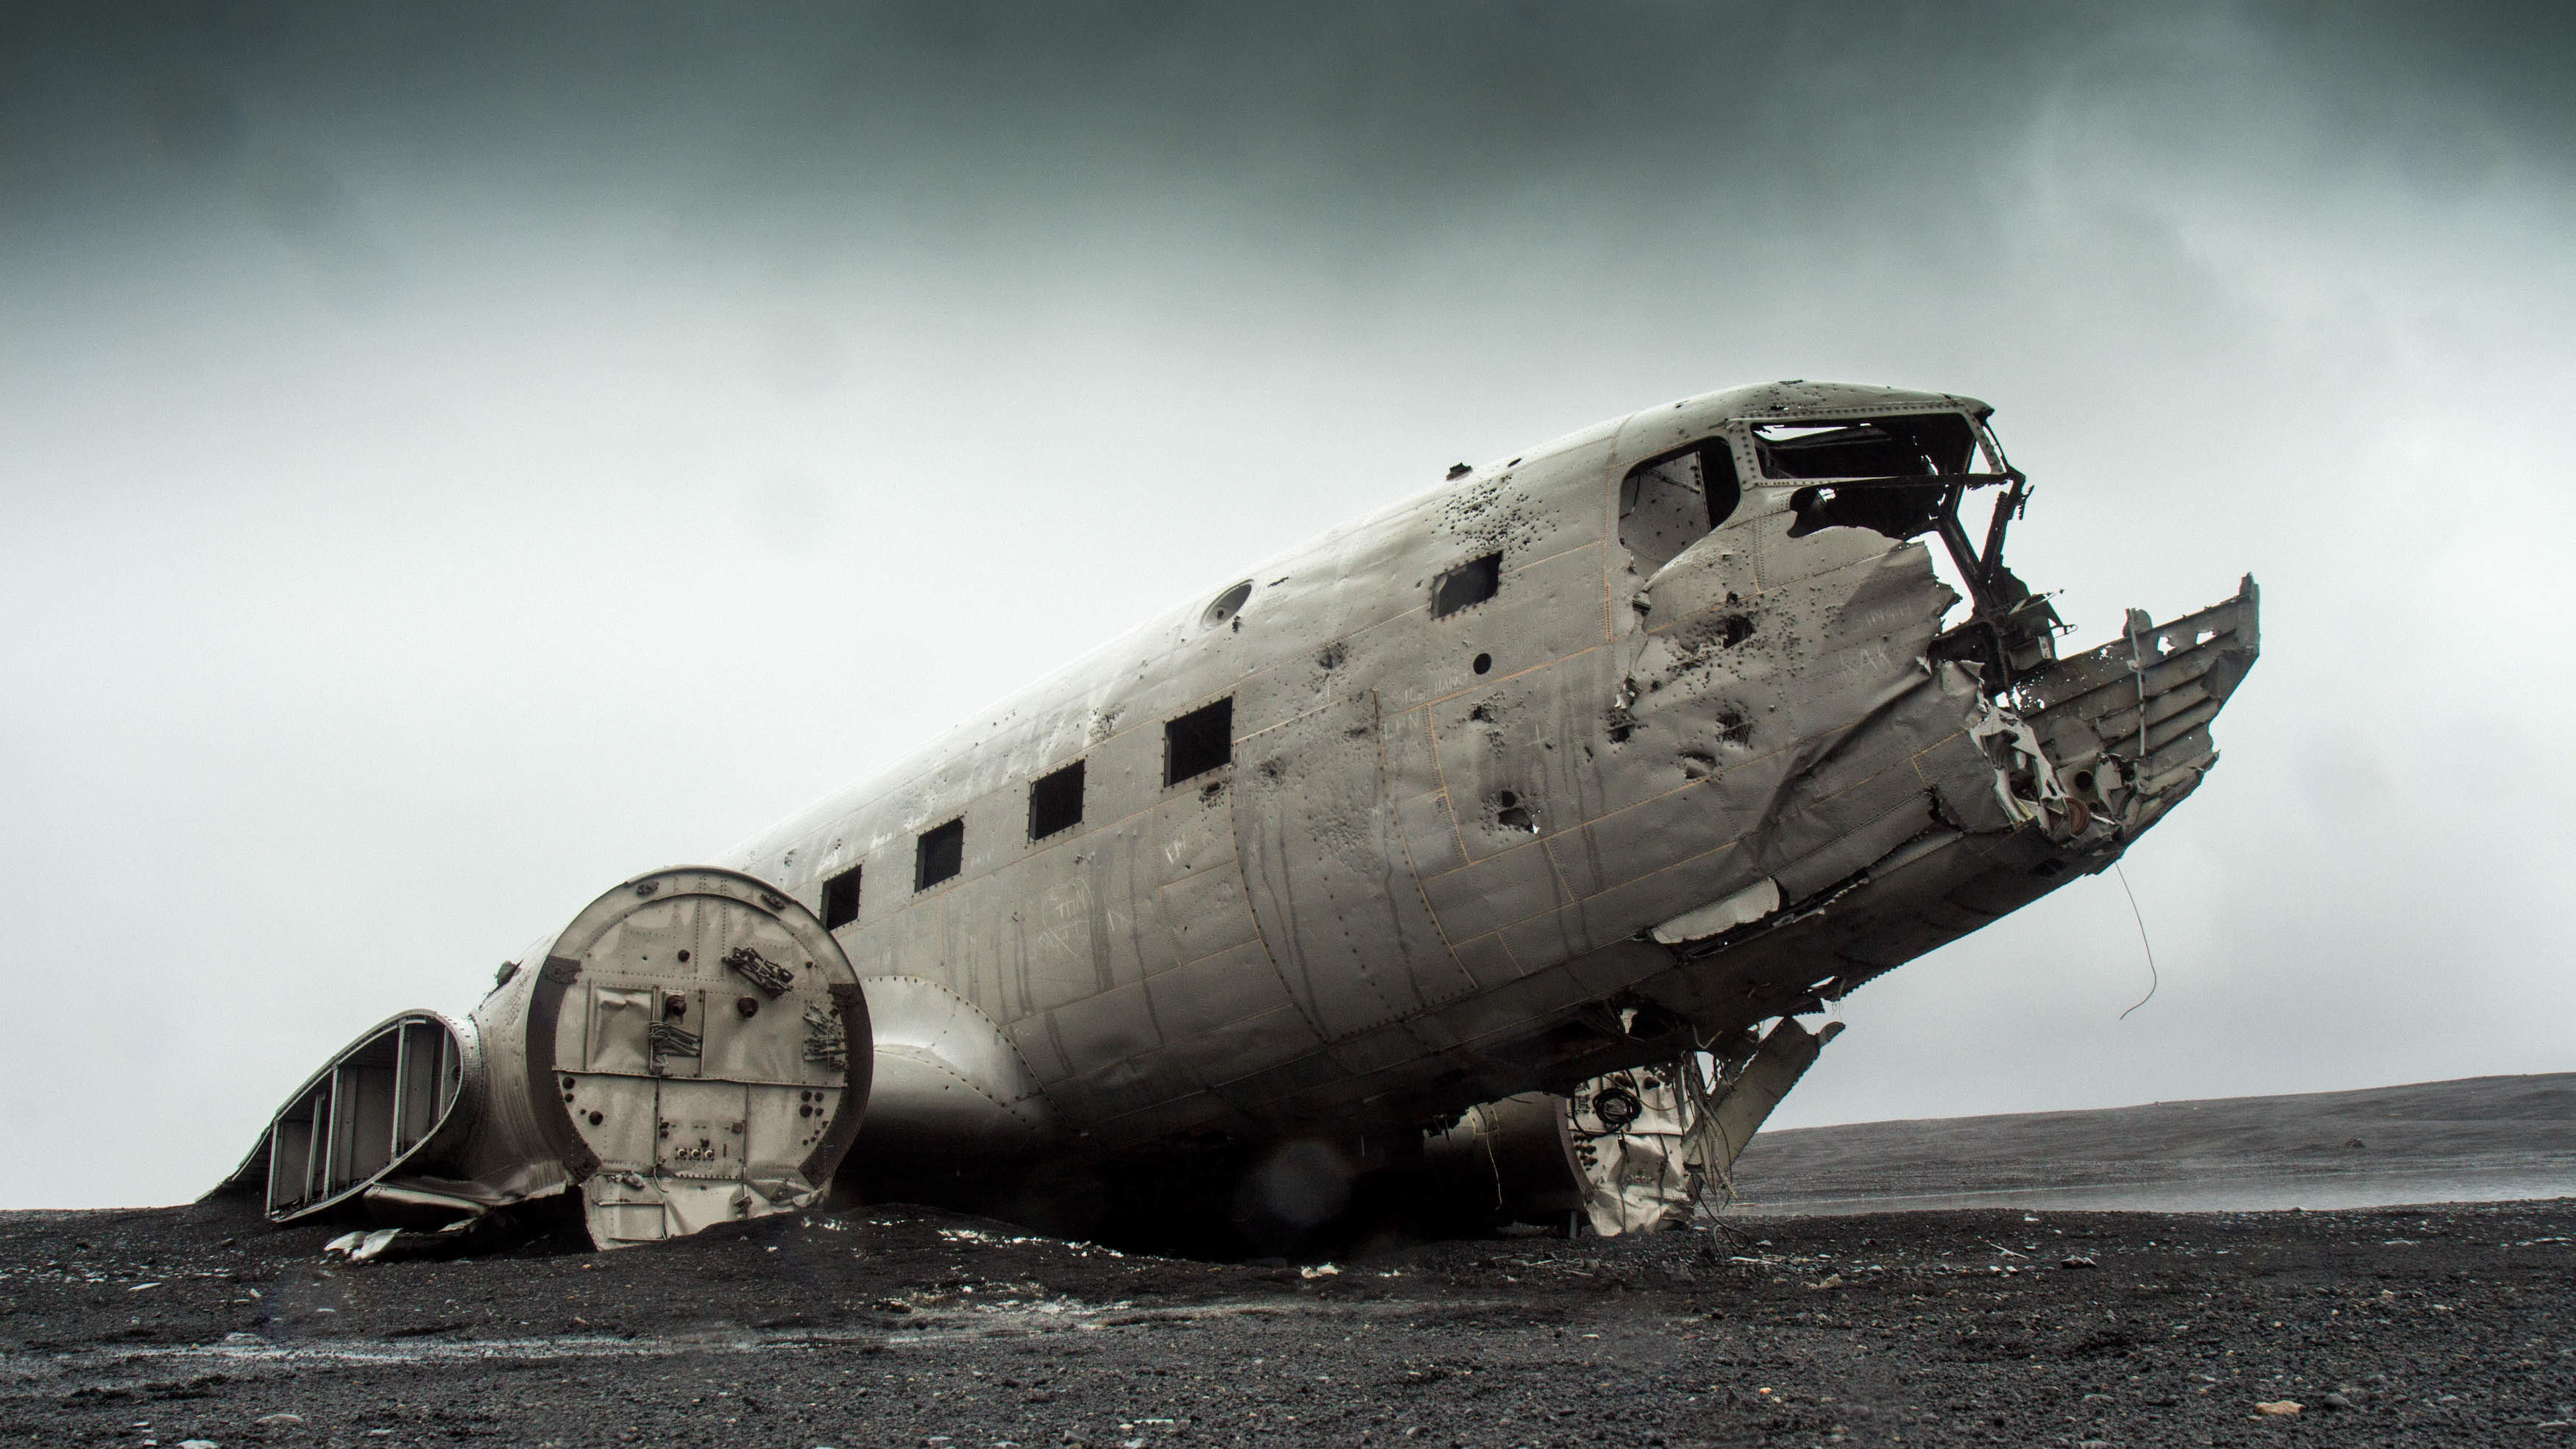 Solheimasandur Plane Wreck, Iceland